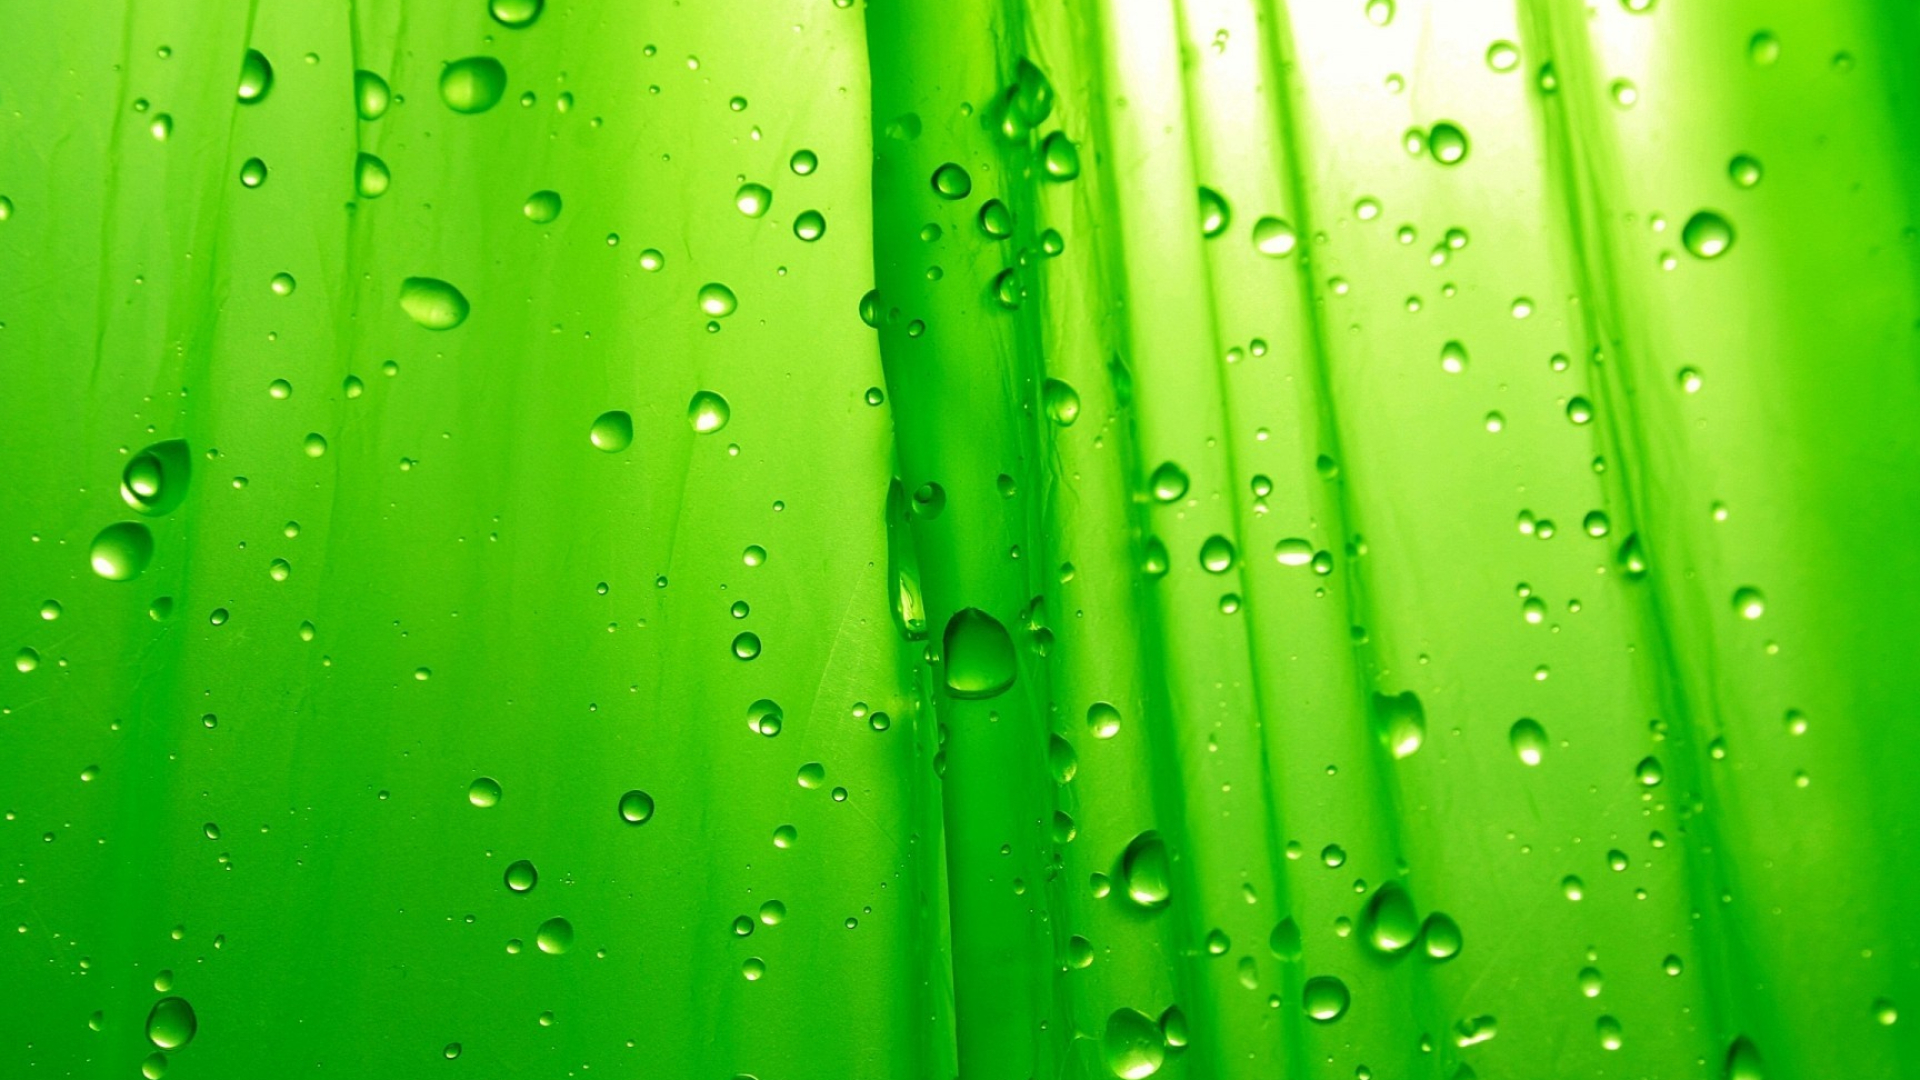 1920x1080 Green Raindrop Wallpaper High Definition, High Resolution HD Wallpapers : High Definition, High Resolution HD Wallpapers